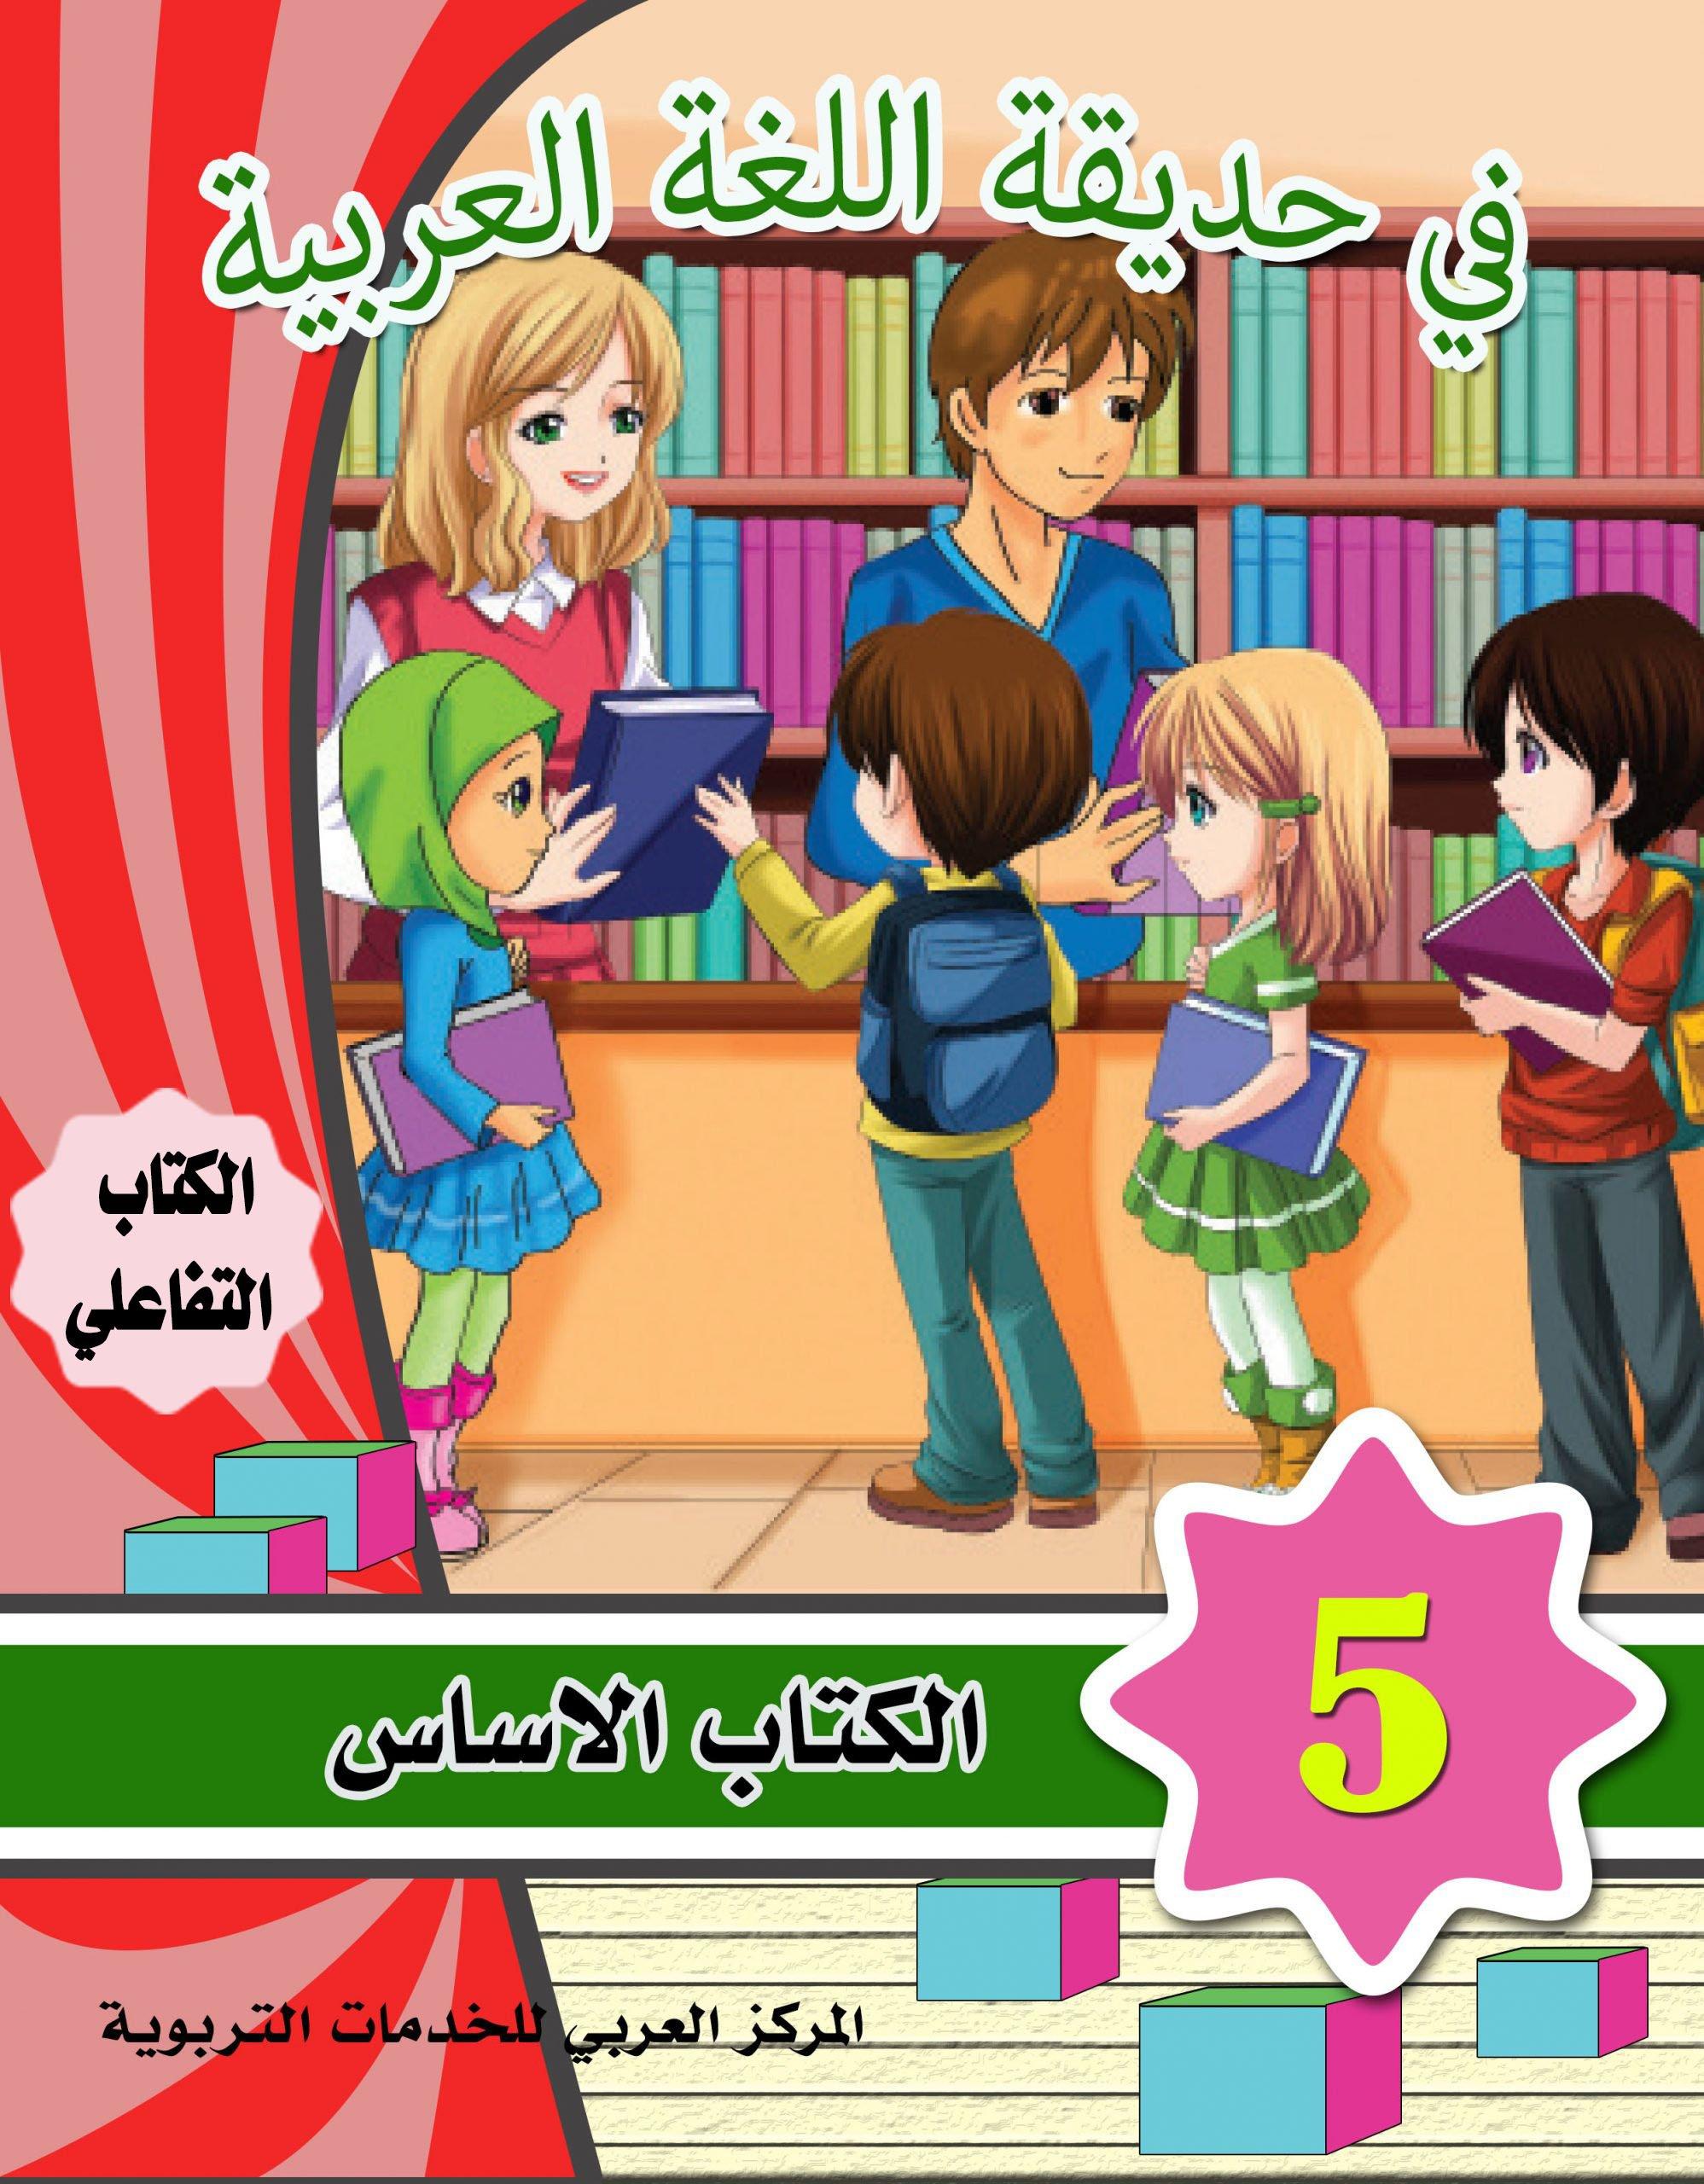 في حديقة اللغة العربية : المستوى الخامس كتاب التلميذ + تمارين كتب أطفال المركز العربي للخدمات التربوية